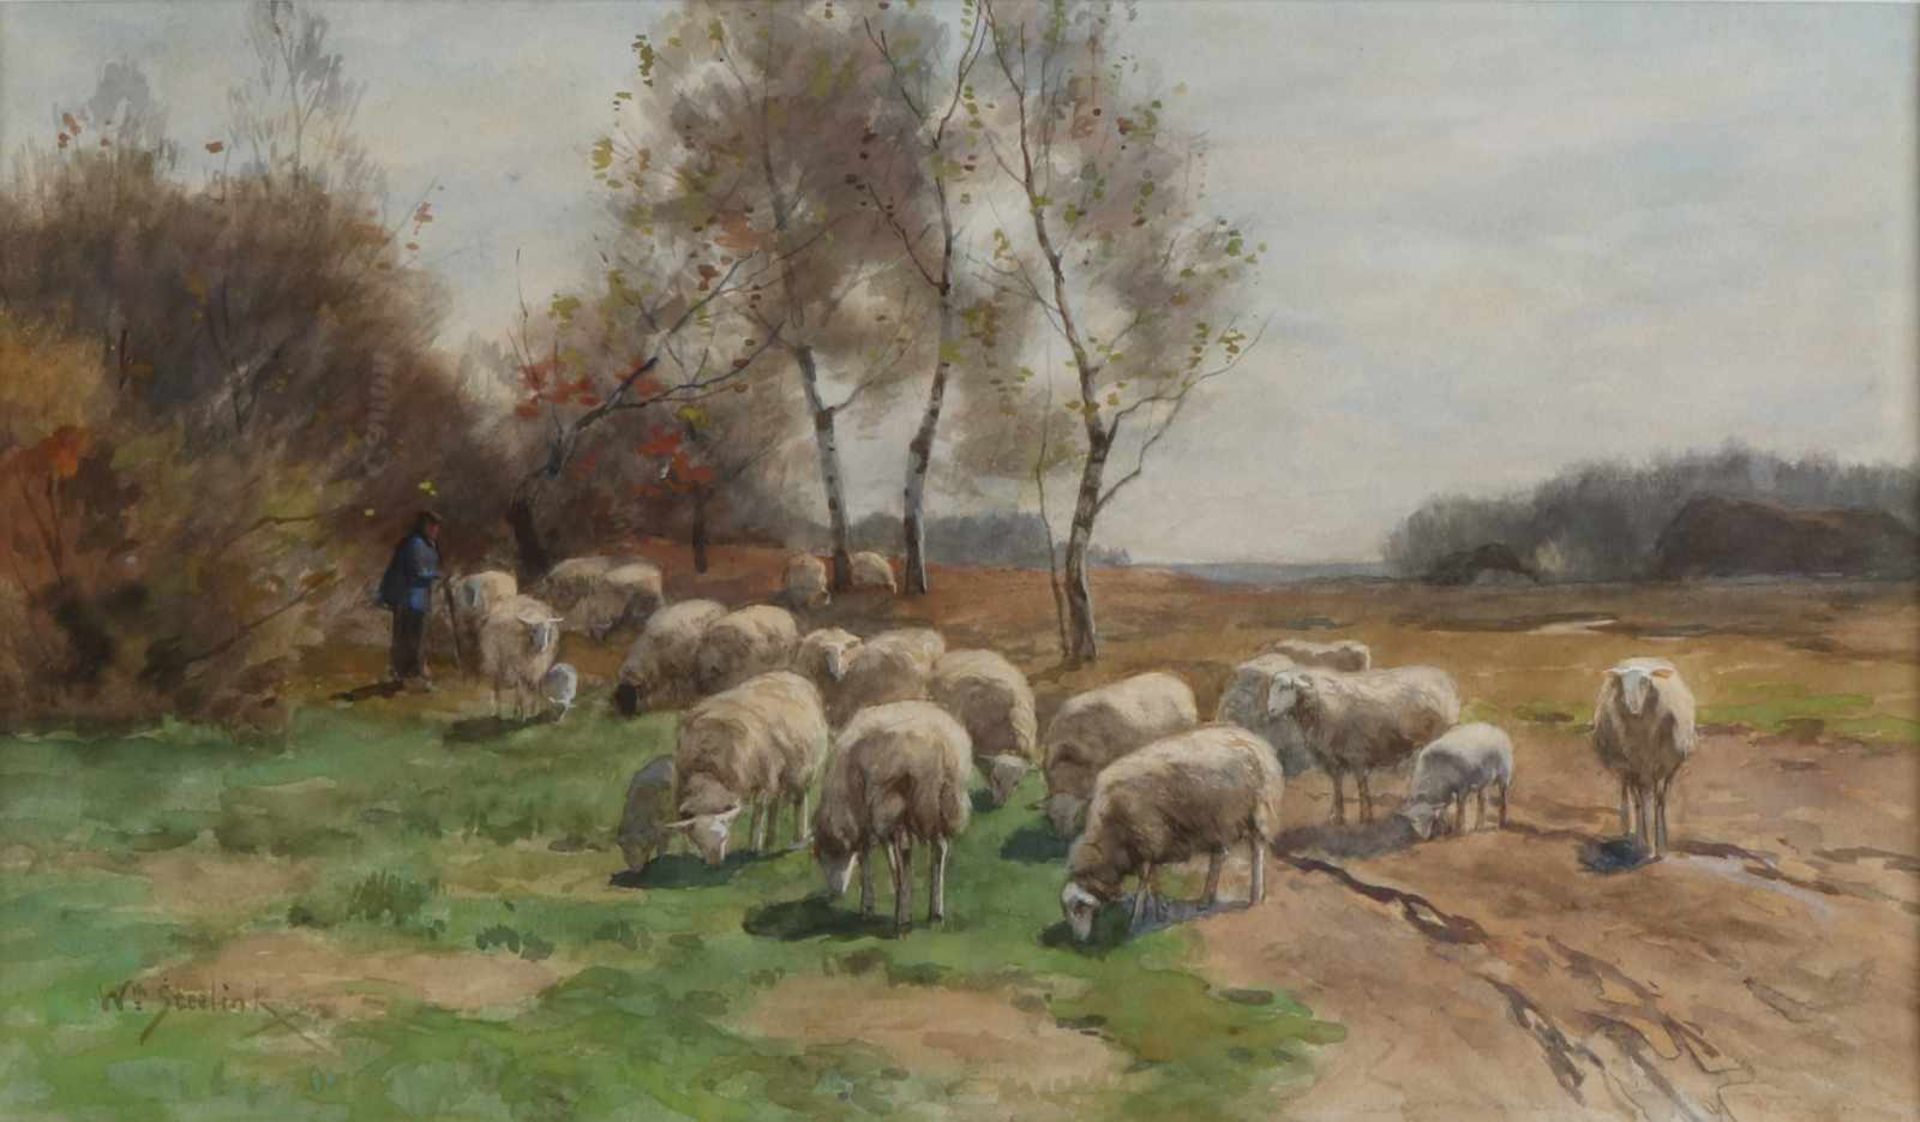 Willem Steelink. 1856-1928 Hirte mit seinen Schafen in der Landschaft. Aquarell auf Papier.